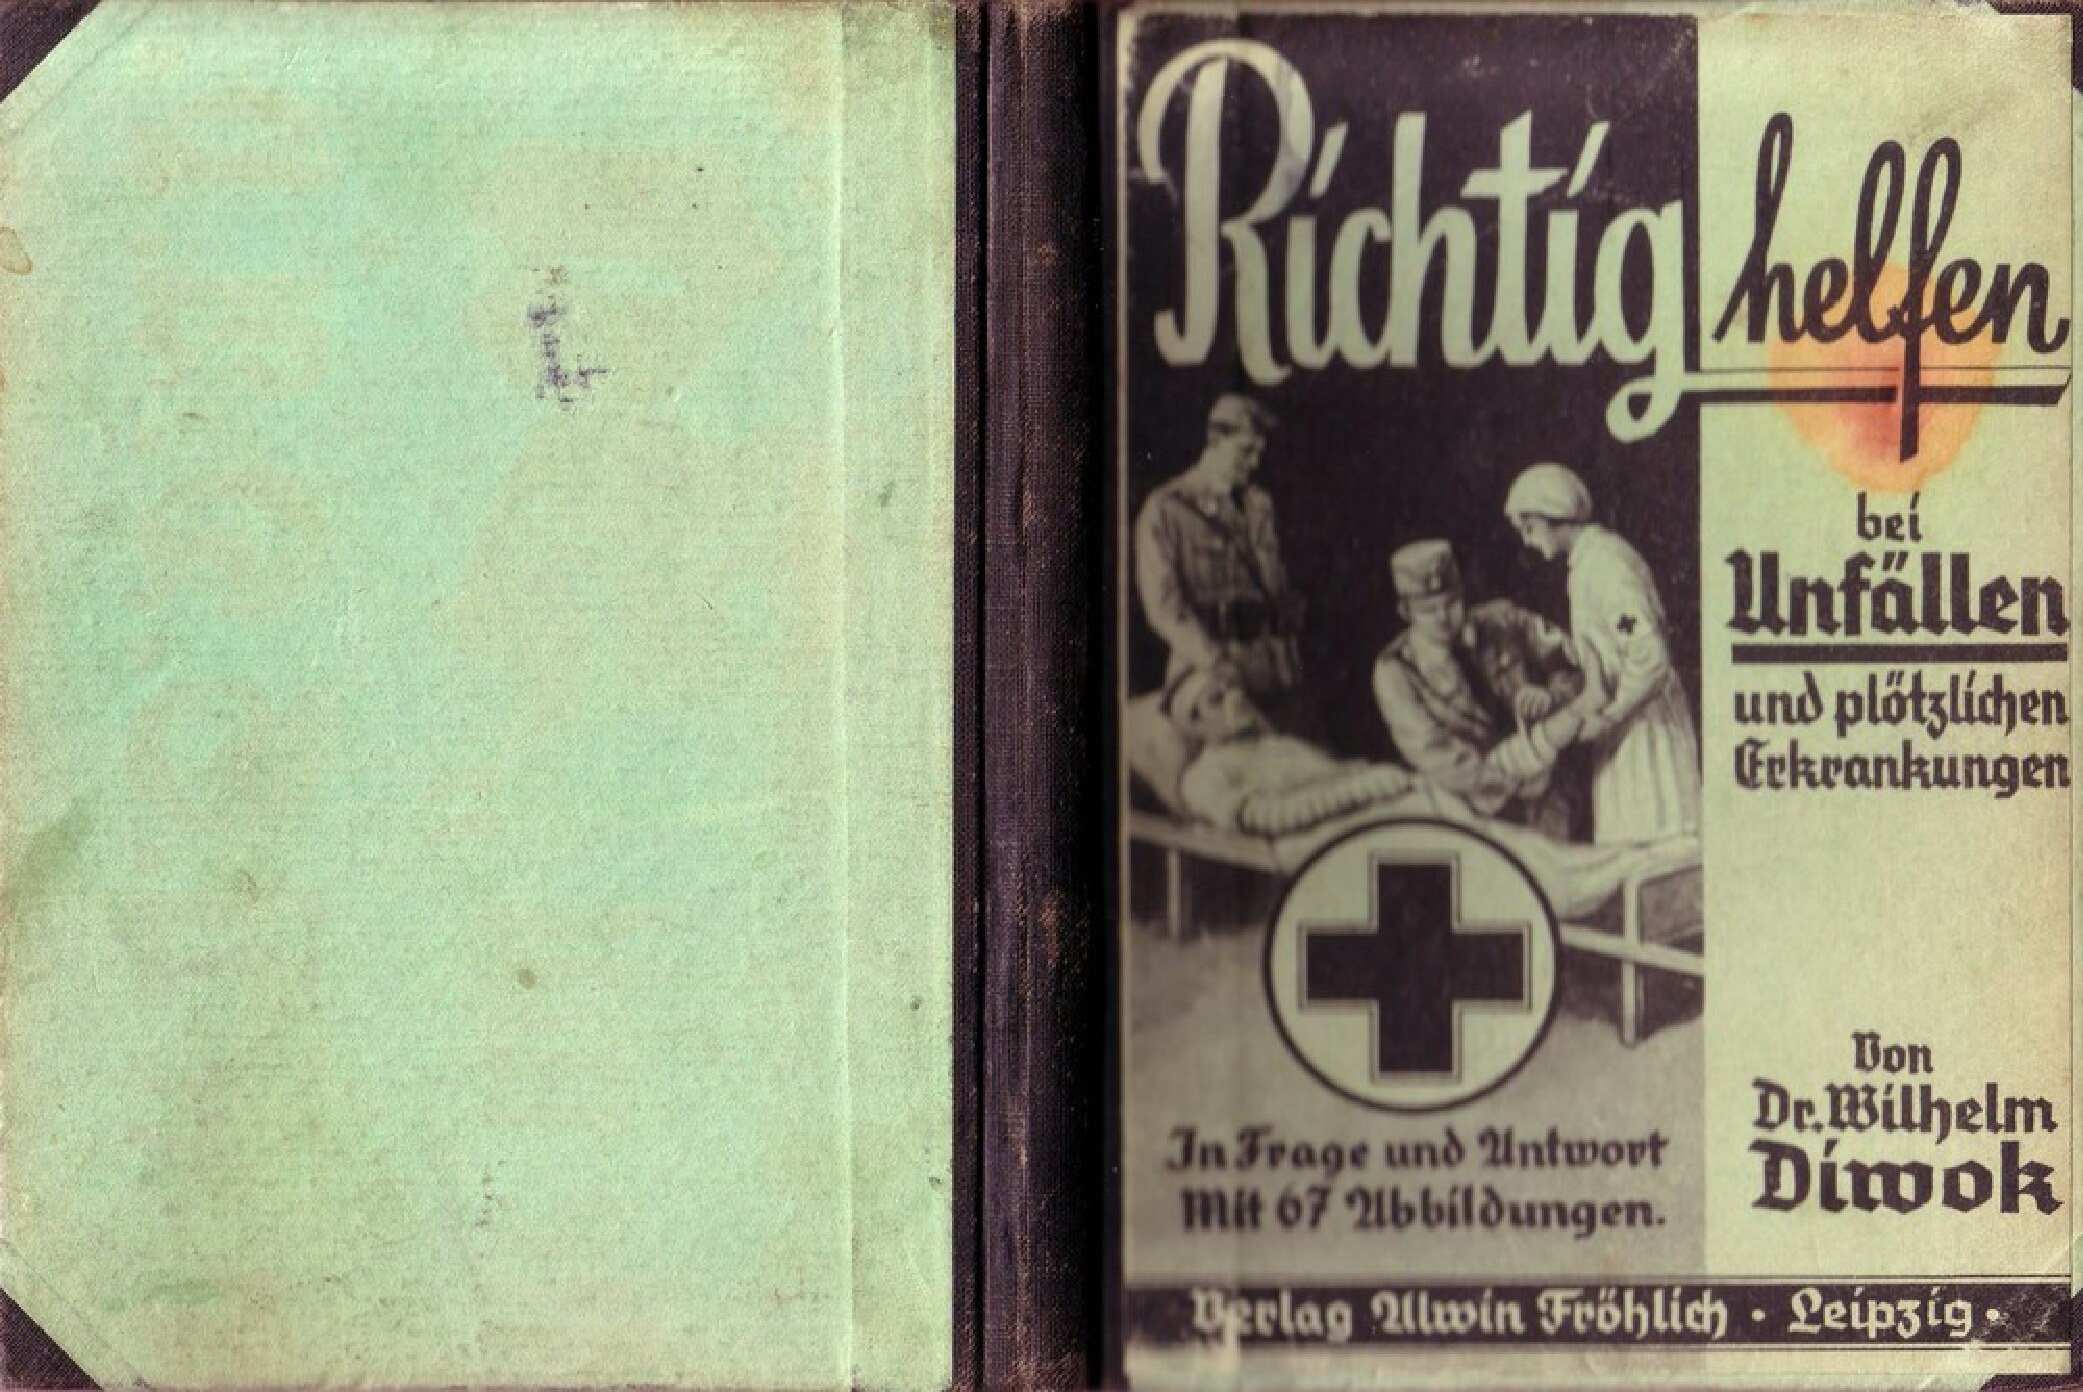 Richtig helfen bei Unfällen und plötzlichen Erkrankungen (1942, 51 Doppels., Scan, Fraktur)